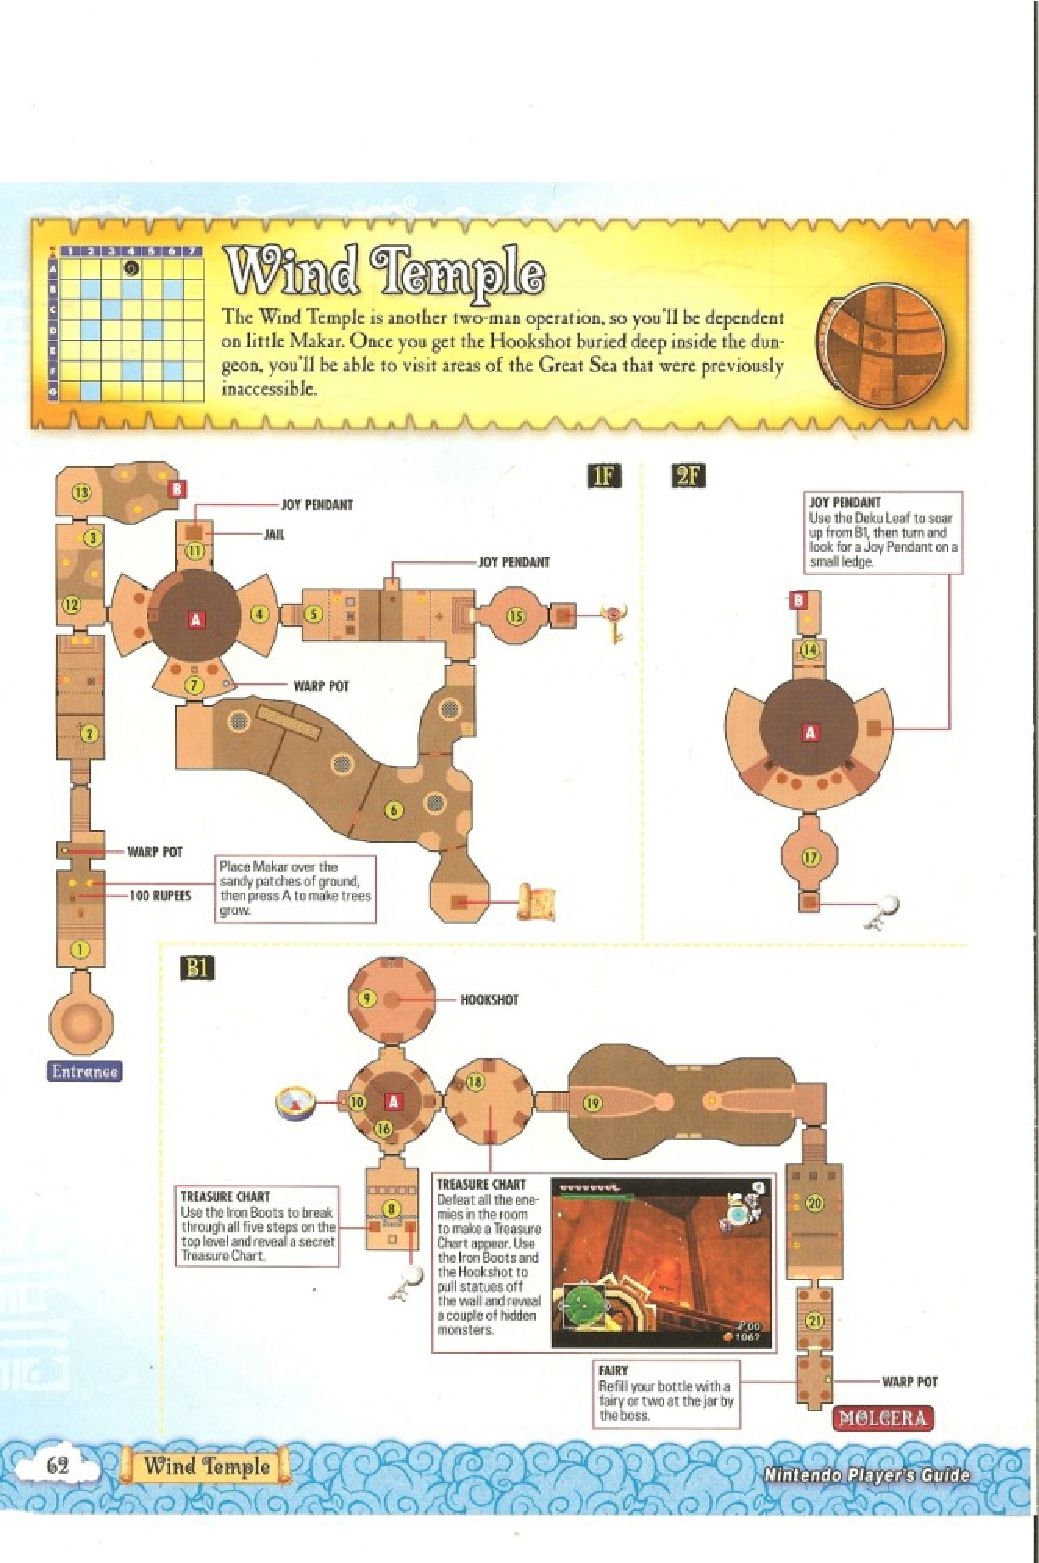 The Legend of Zelda - wind waker - Strategy Guide 64